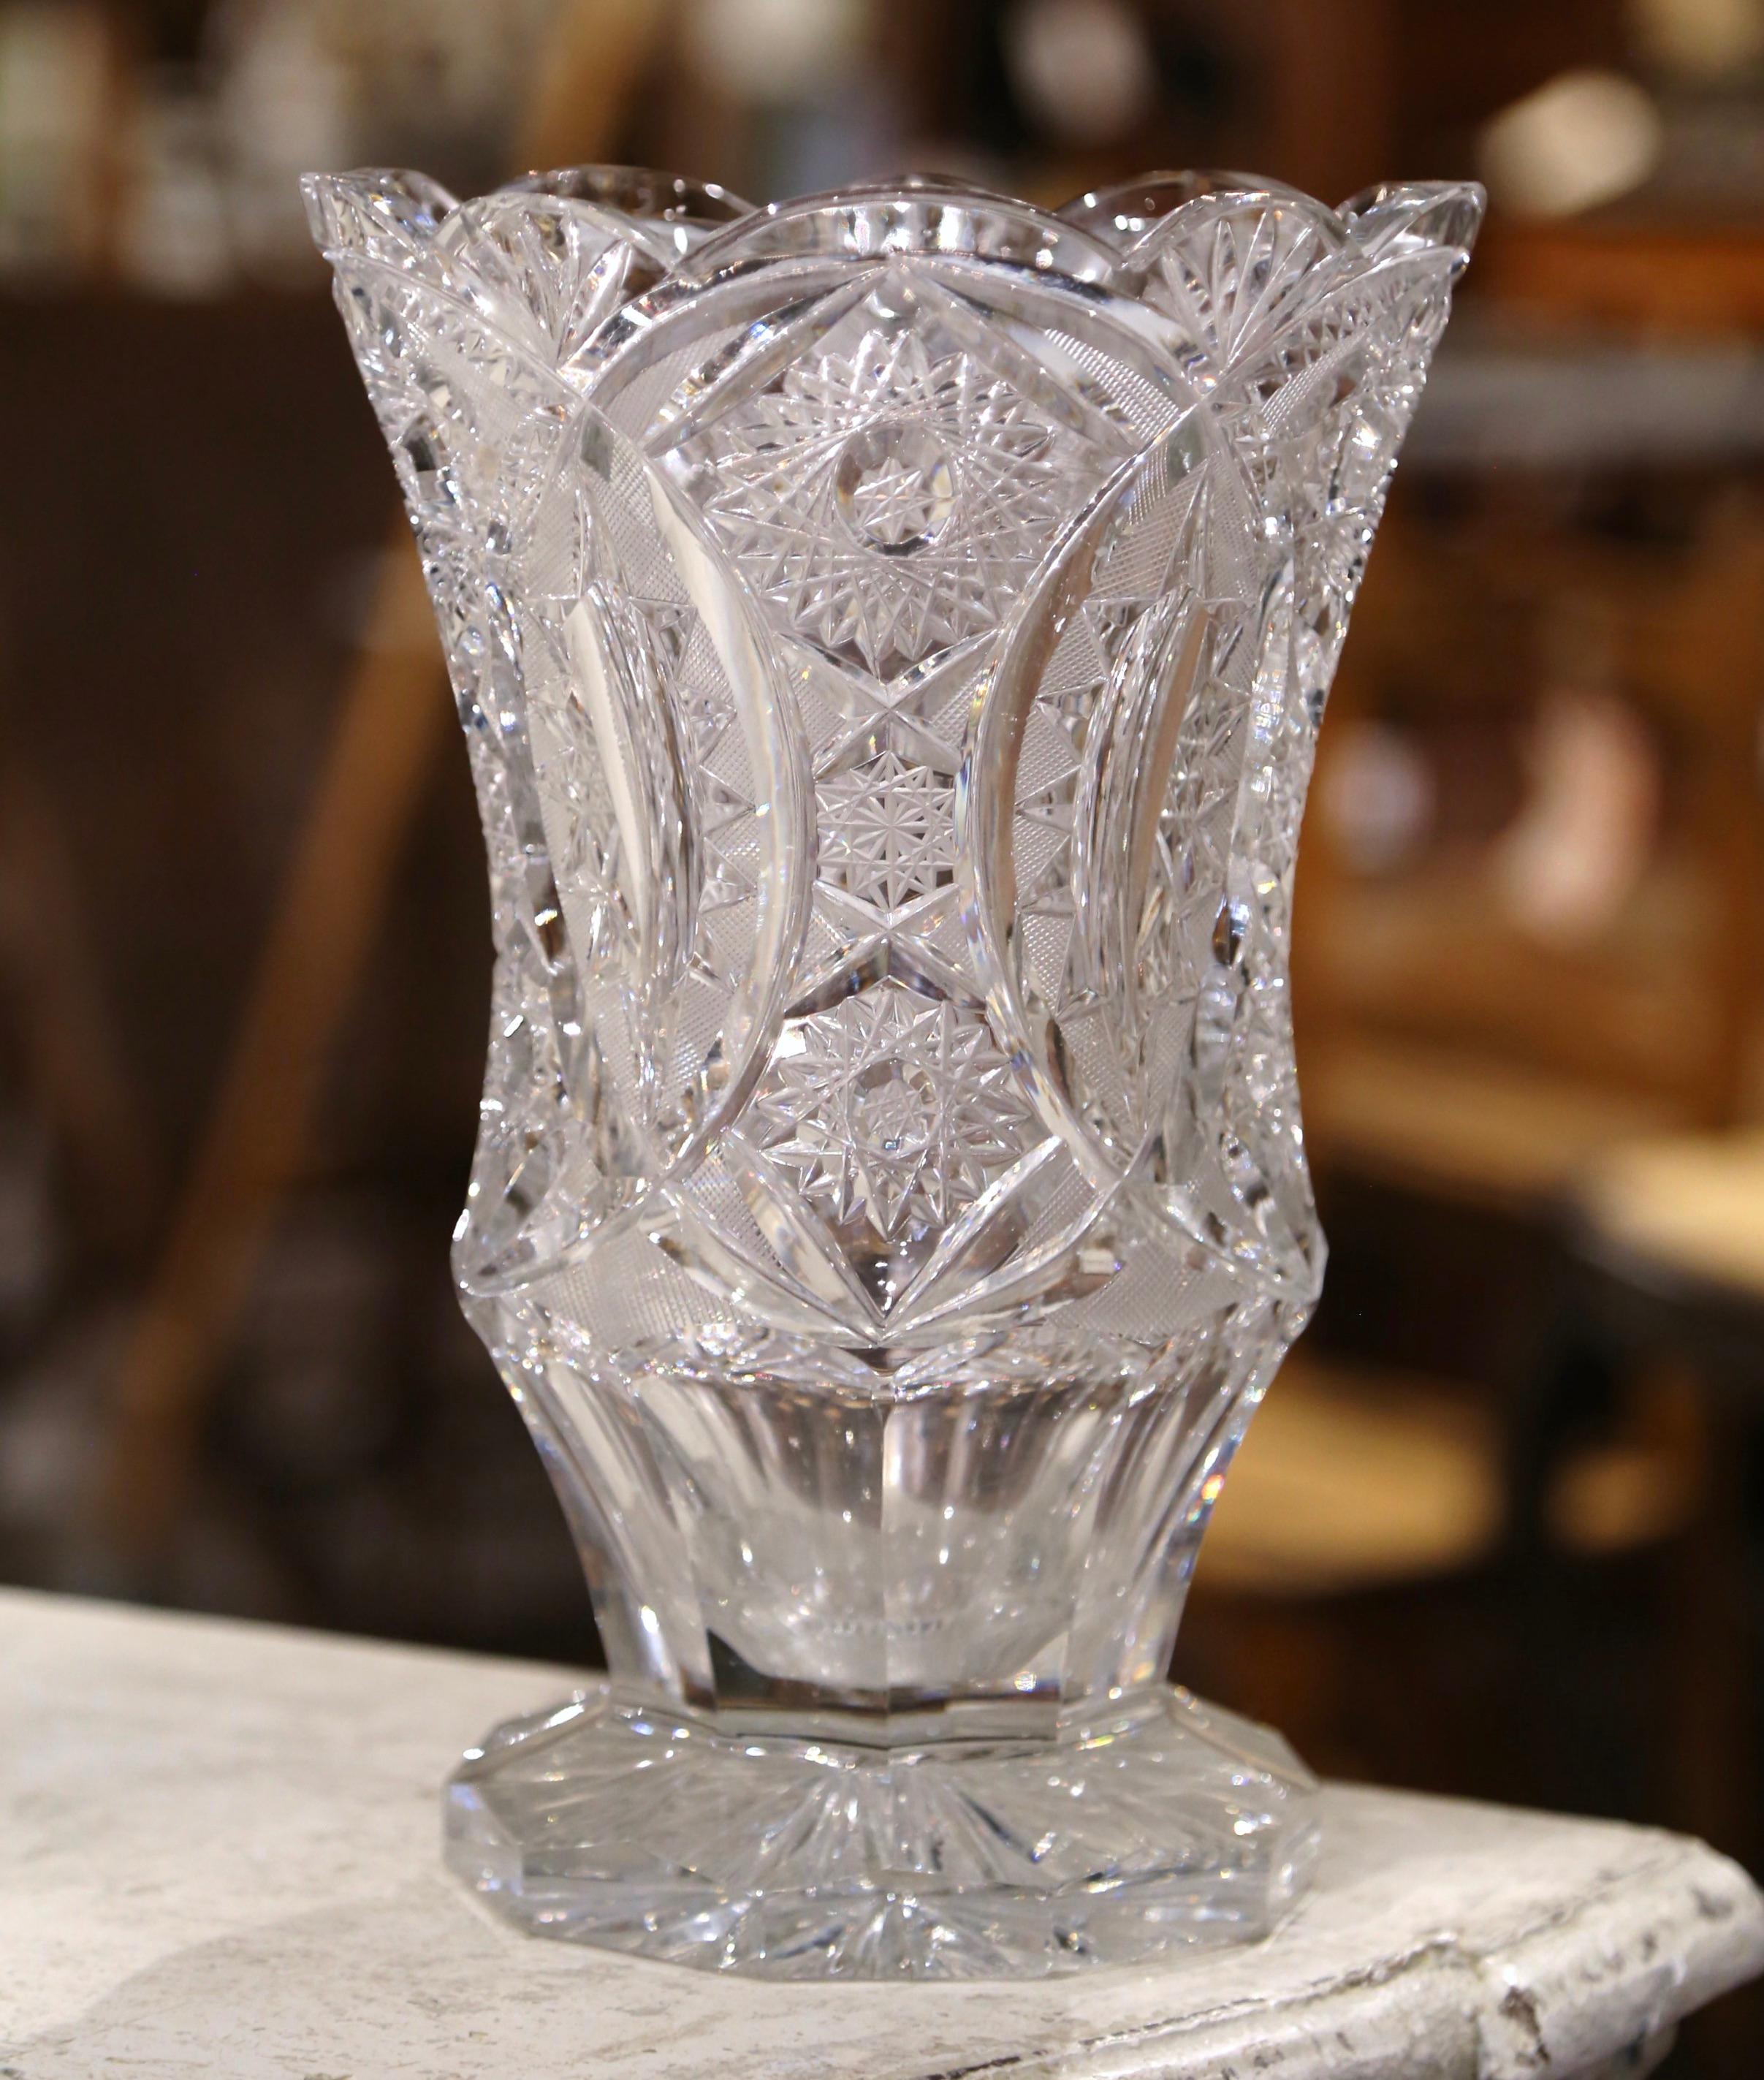 Dekorieren Sie einen Beistelltisch oder eine Enfilade mit dieser eleganten antiken Vase. Die um 1960 in Frankreich gefertigte hohe neoklassizistische Vase steht auf einem achteckigen Sockel und ist oben mit einer breiten Öffnung verziert. Die Vase